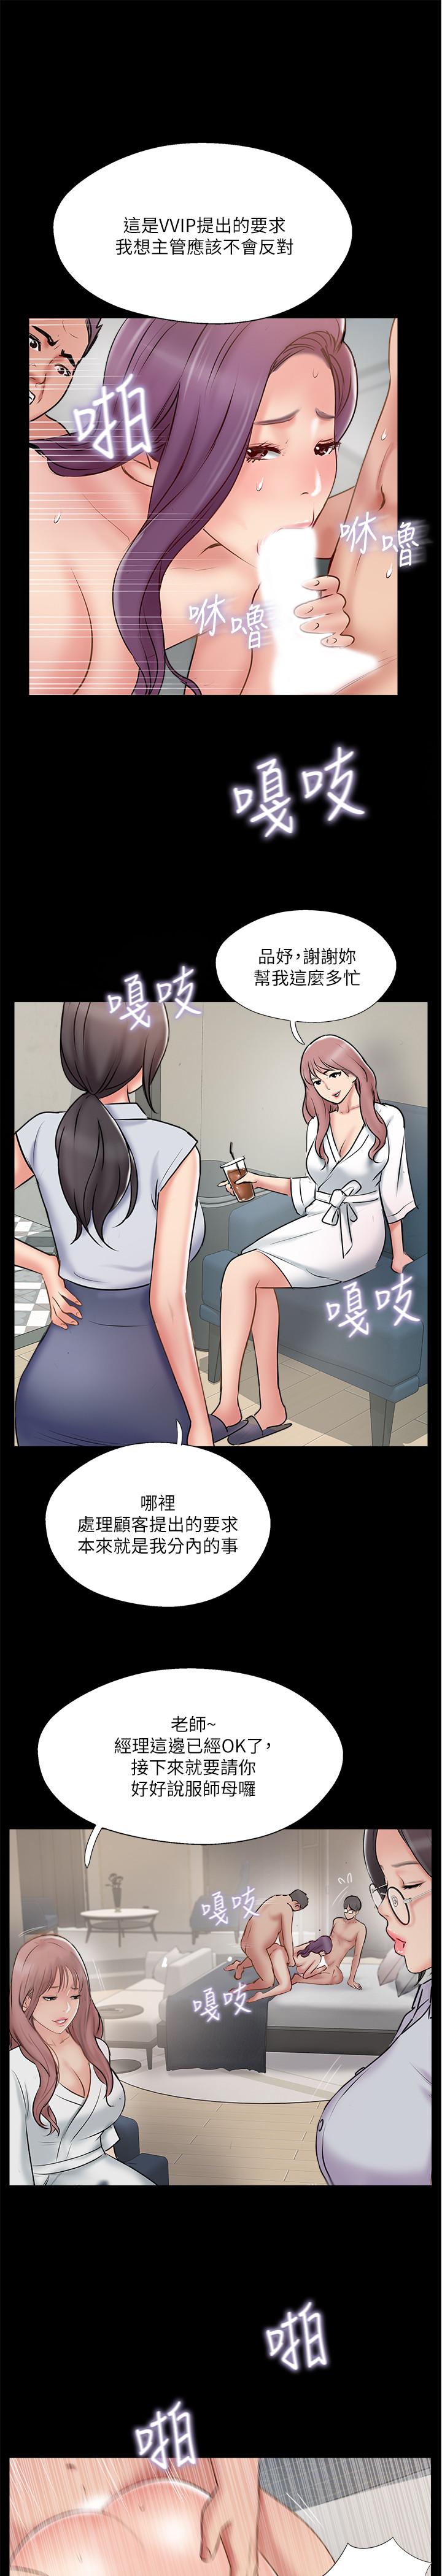 韩国污漫画 完美新伴侶 第39话-欲求不满的饥渴人妻 17